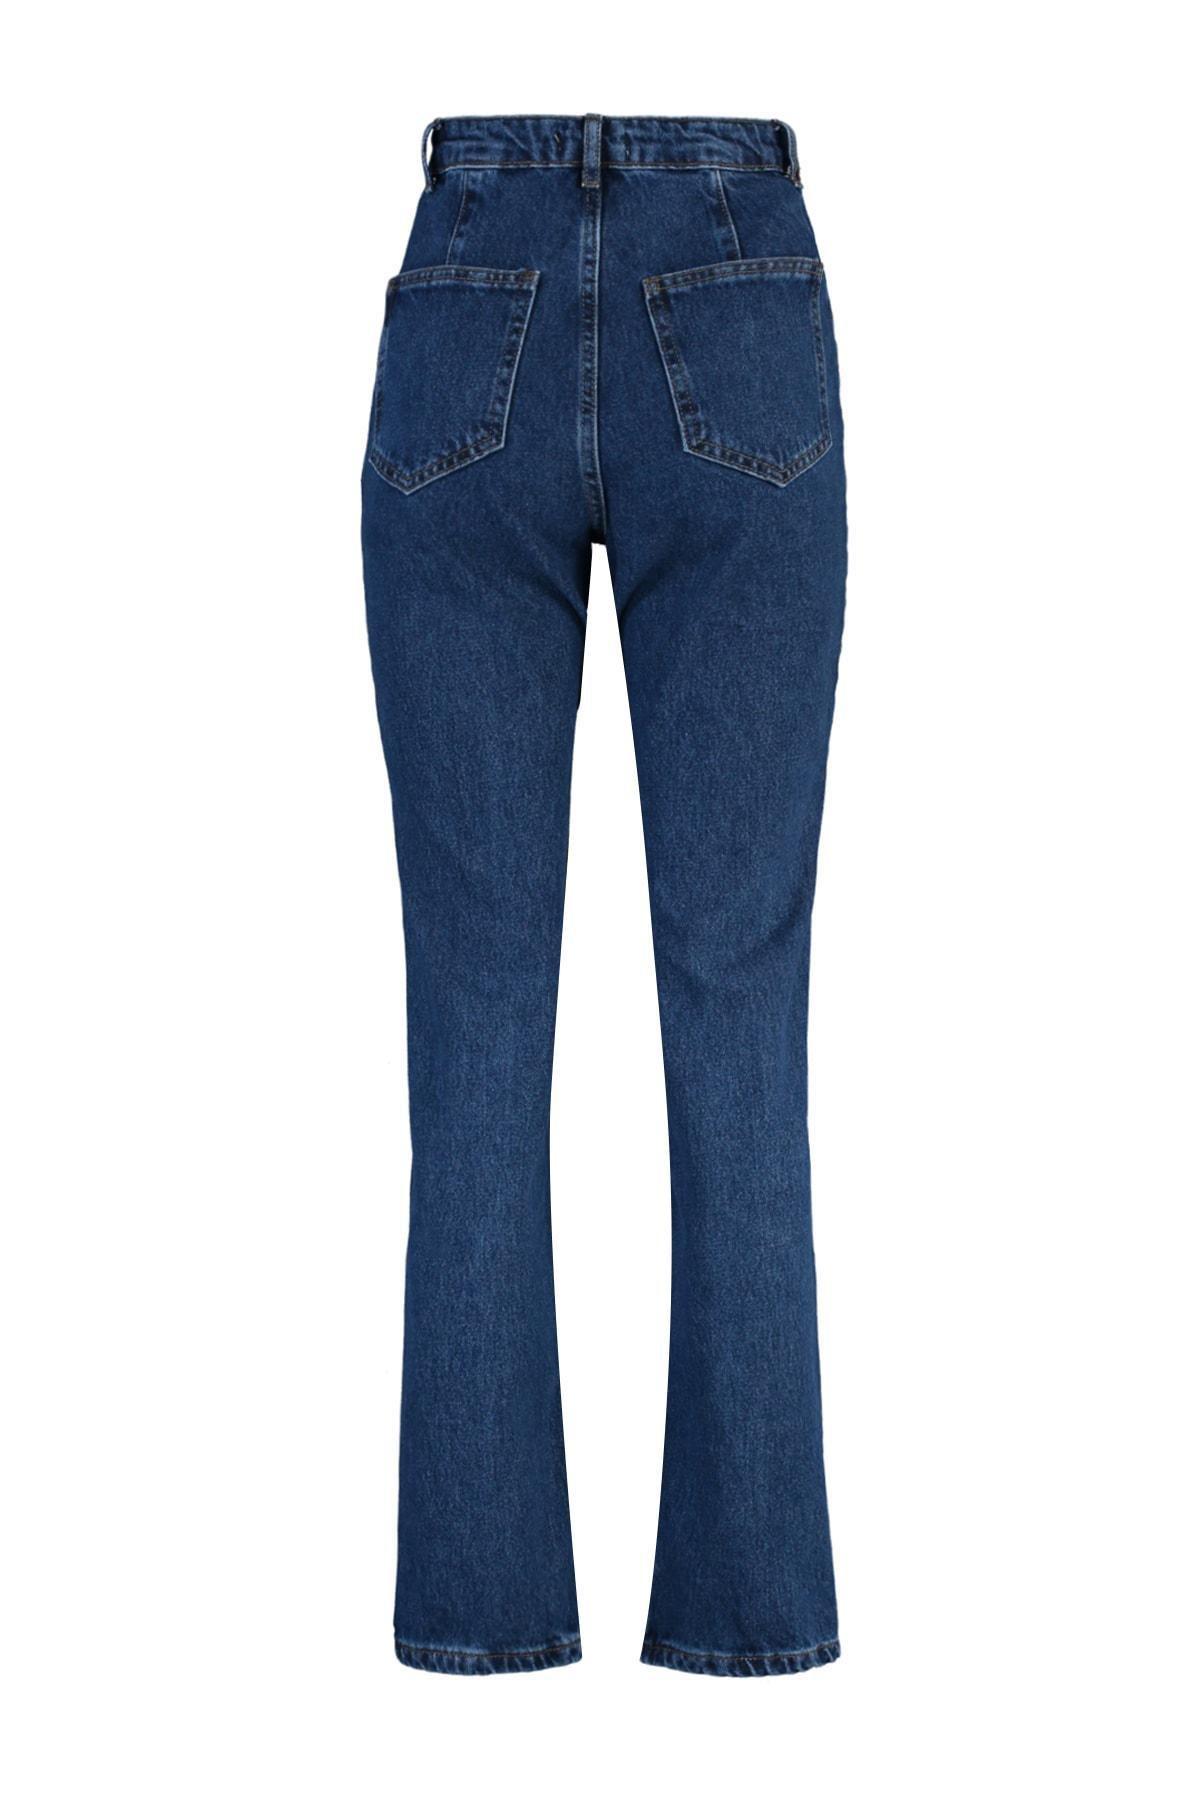 Trendyol - Blue High Waist Bootcut Jeans